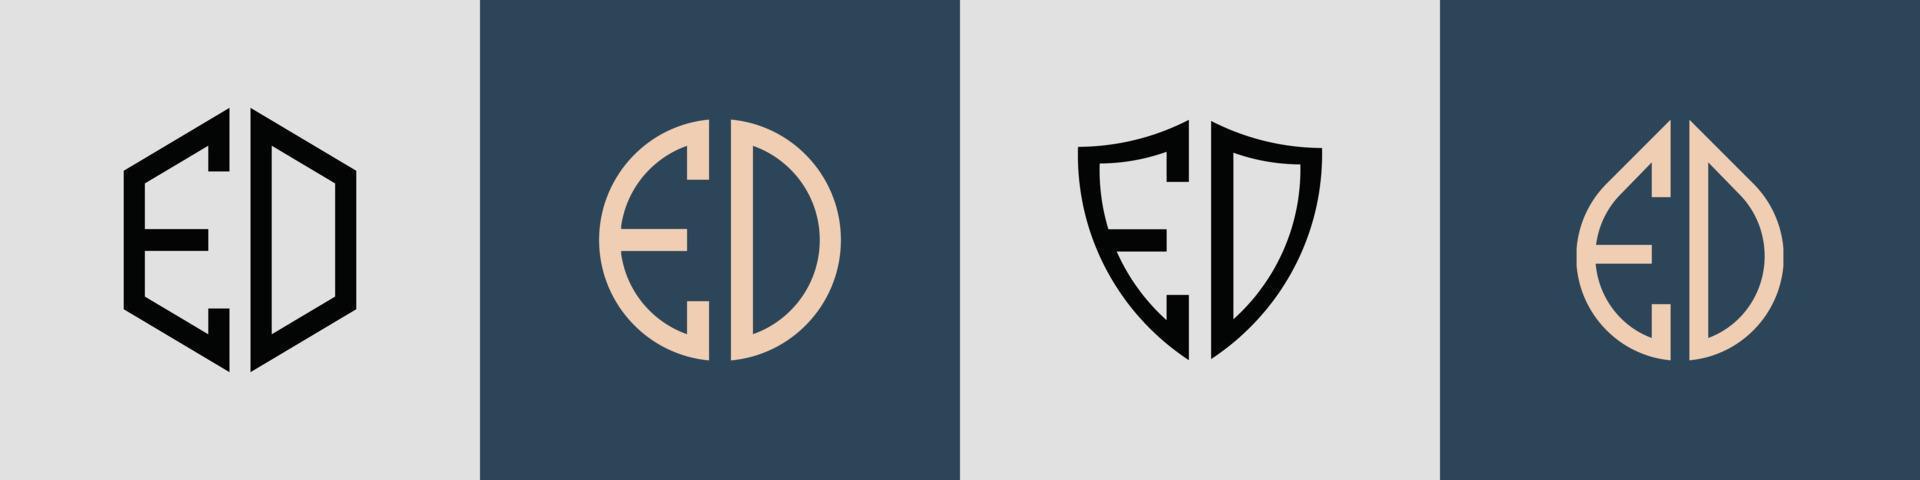 pacchetto creativo semplice di lettere iniziali ed logo design. vettore